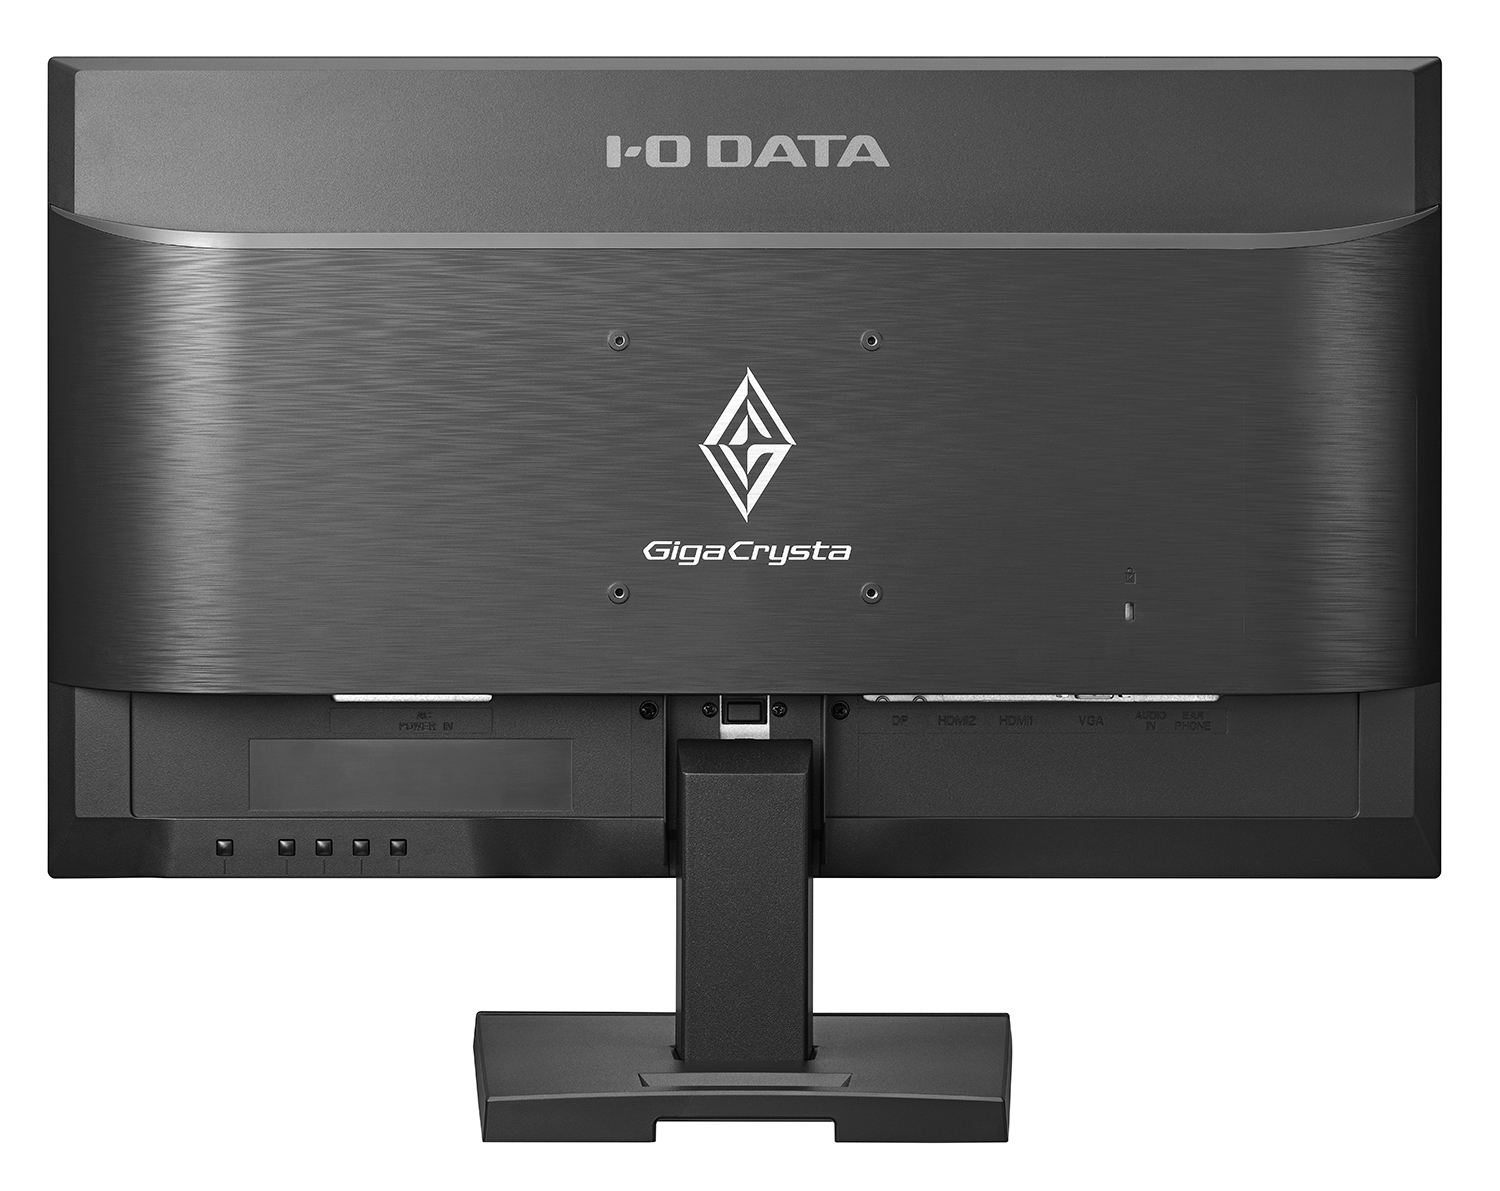 【公式】のネット通販 I-O DATA GigaCrysta 24.5インチ ゲーミングモニター ディスプレイ